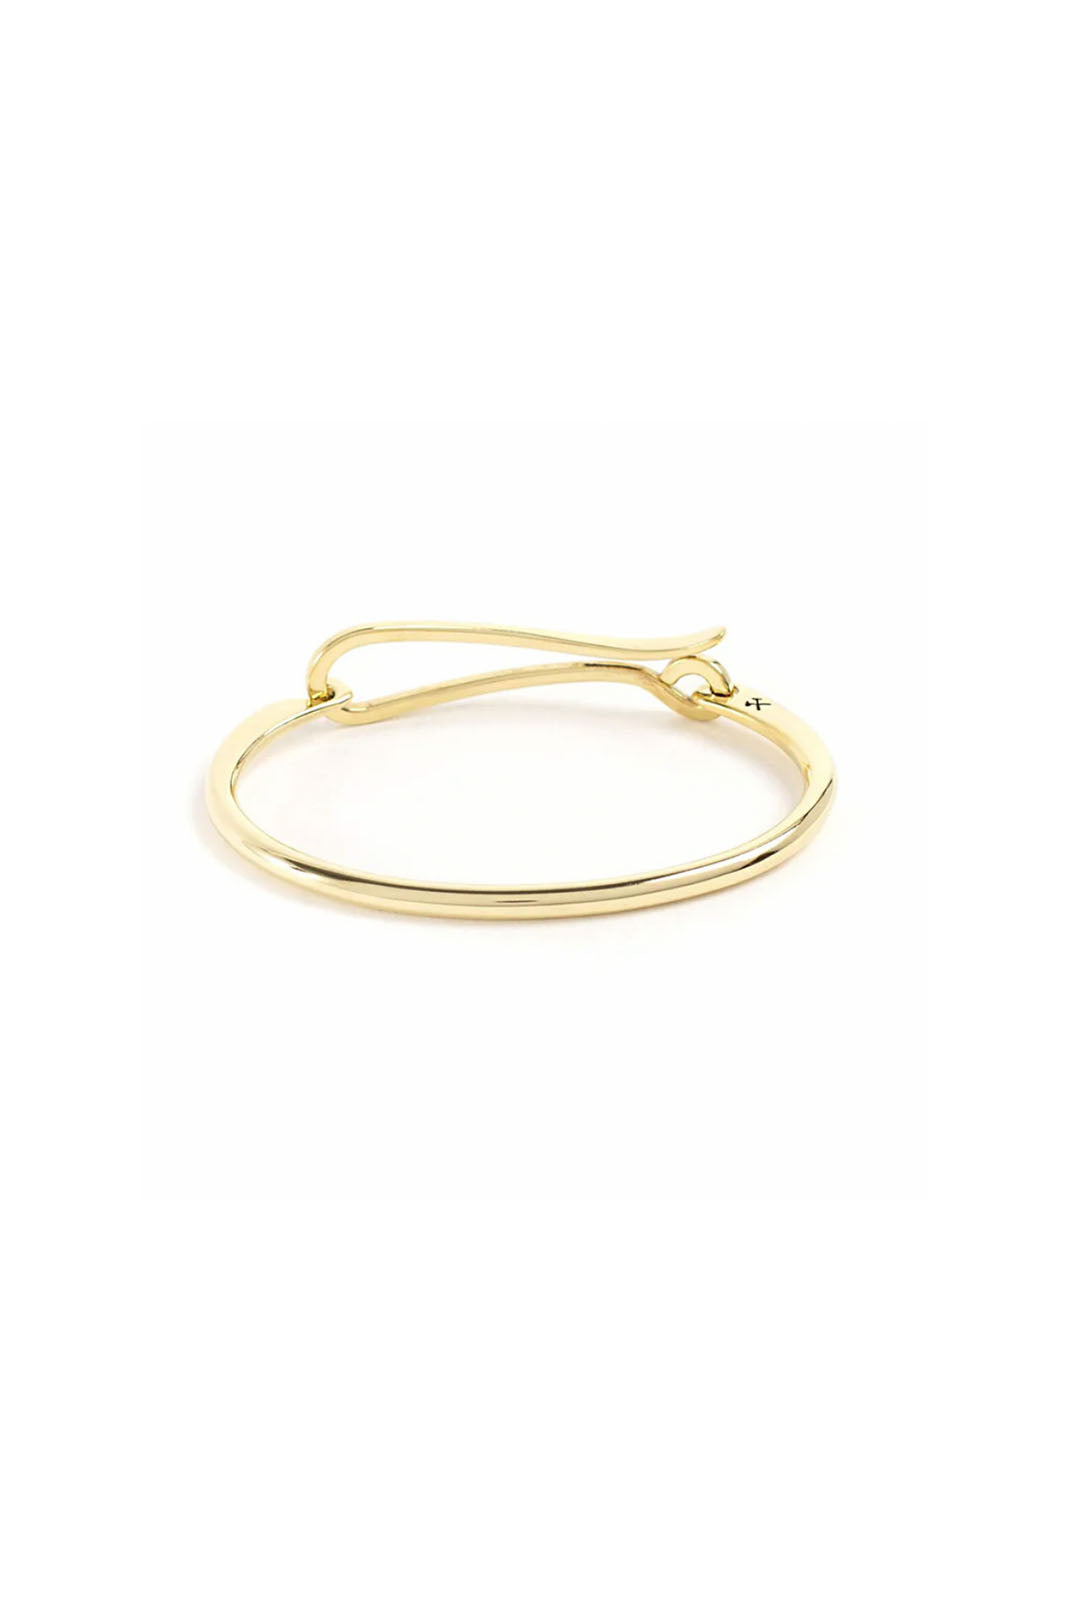 Hook Bracelet - Brass, Polished